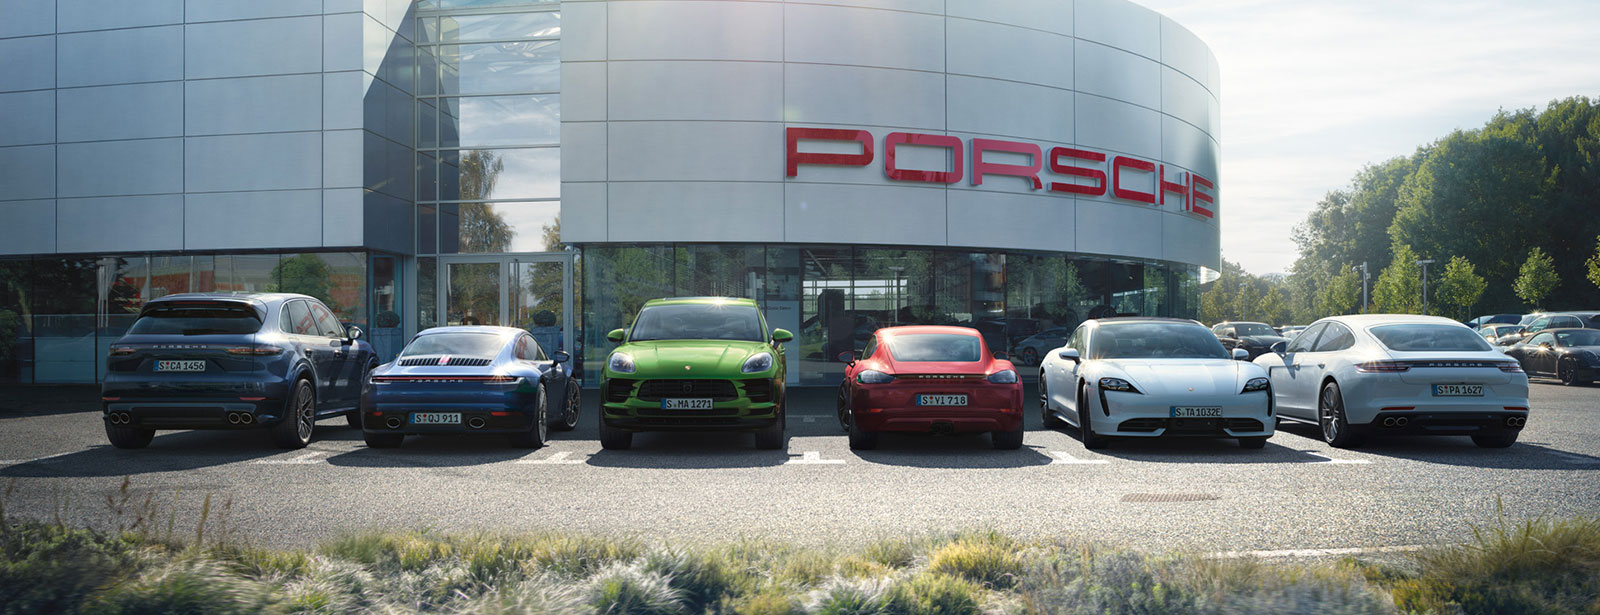 Porsche - ポルシェフルラインナップセッション2020 あなたに1番のポルシェと出逢える特別な2日間。2/29(土)-3/1(日)開催。